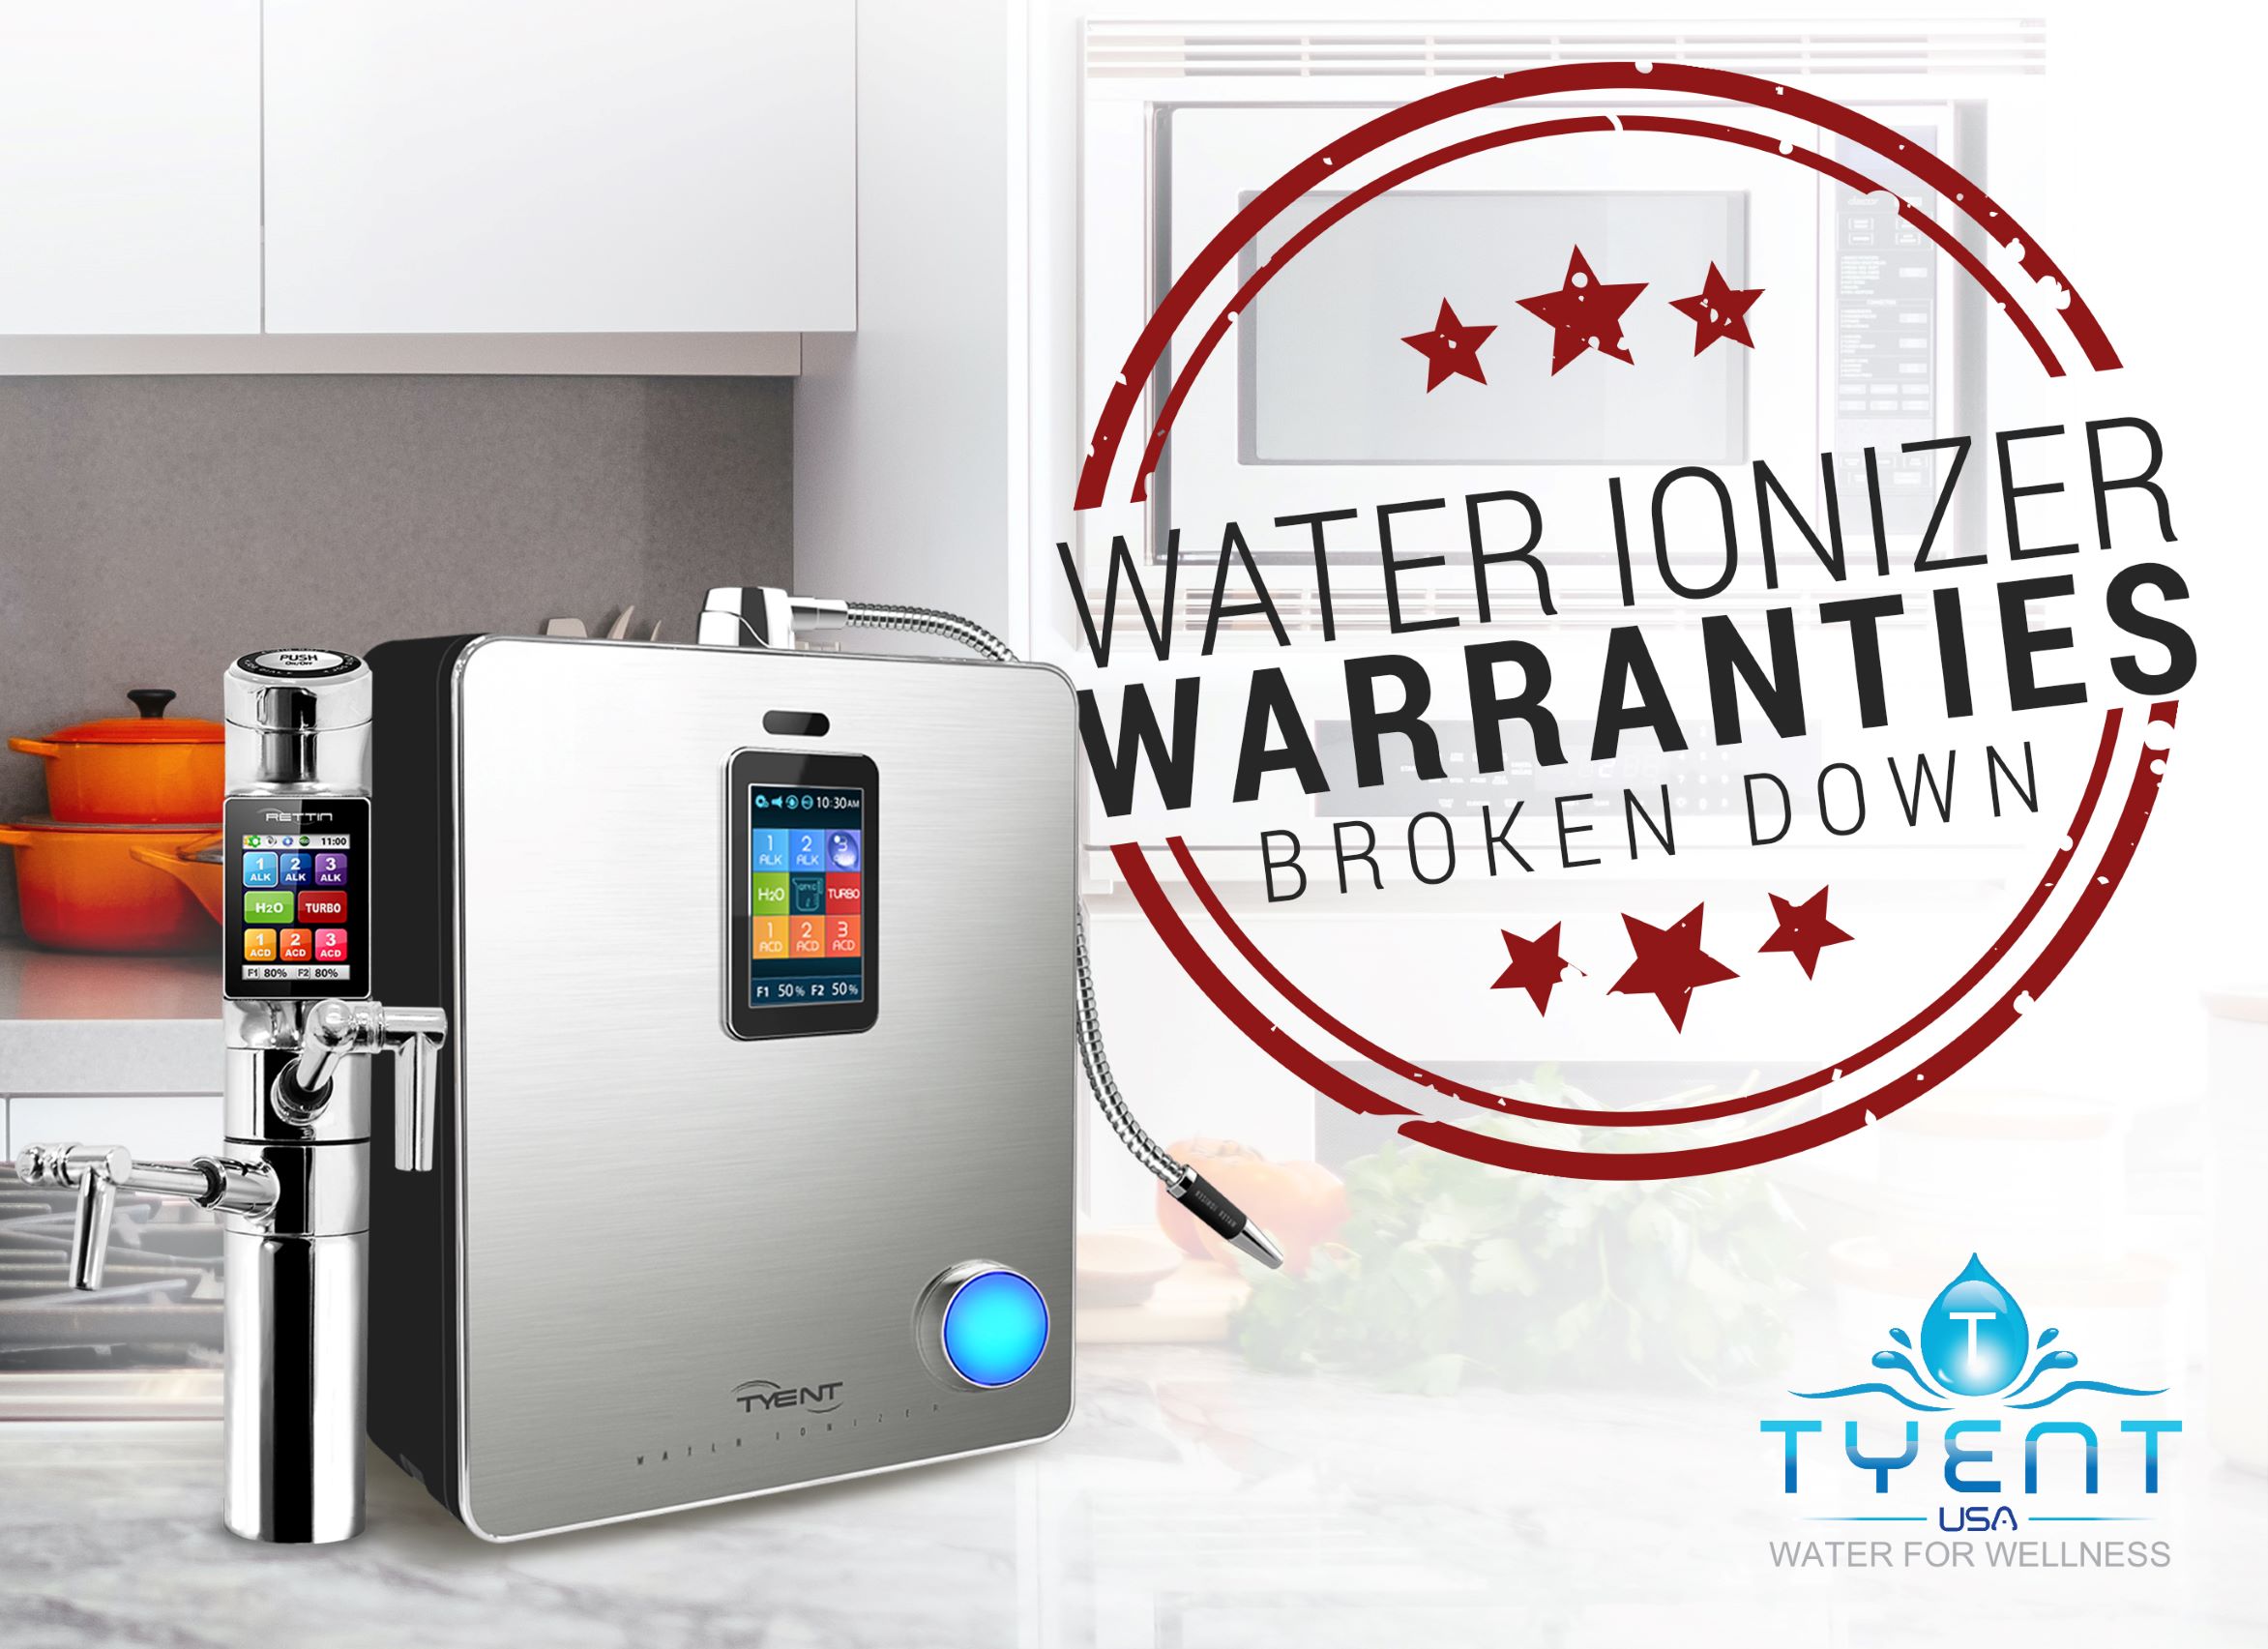 Water Ionizer Warranties Broken Down